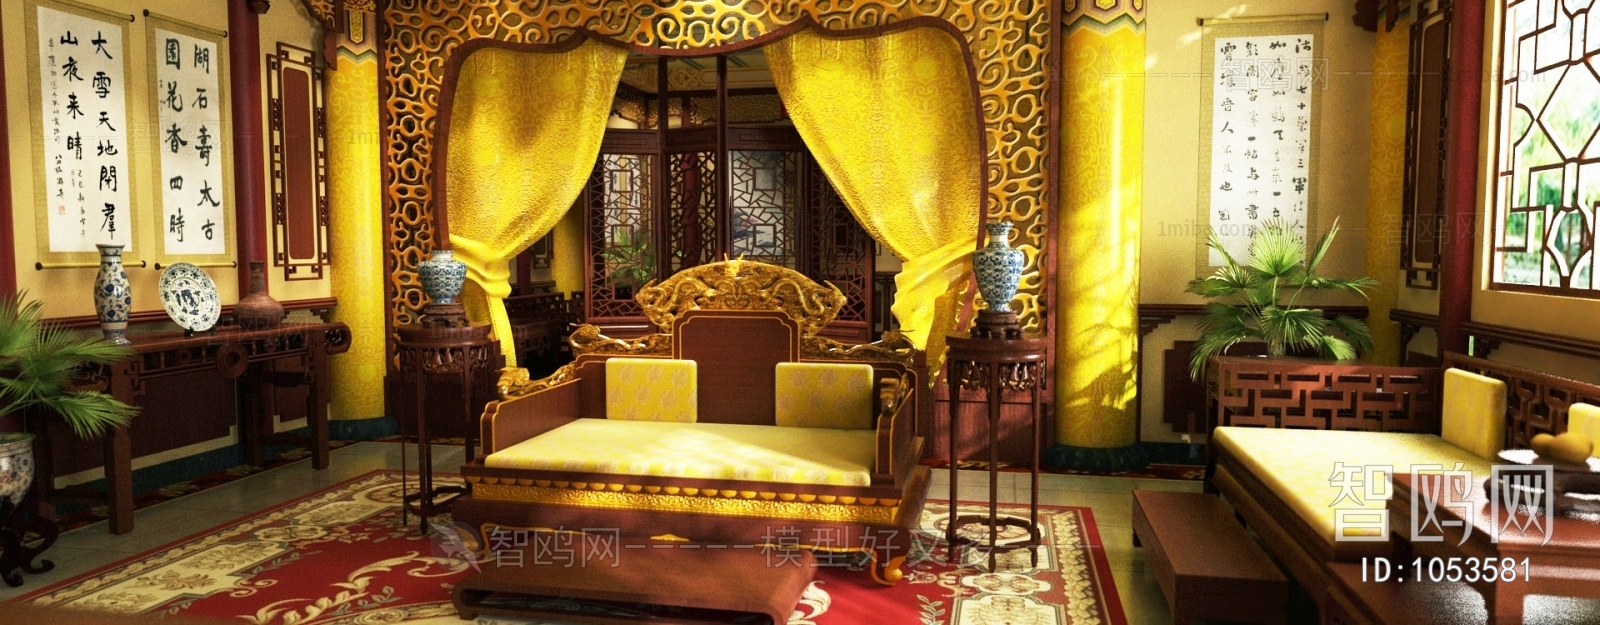 中式皇室龙椅